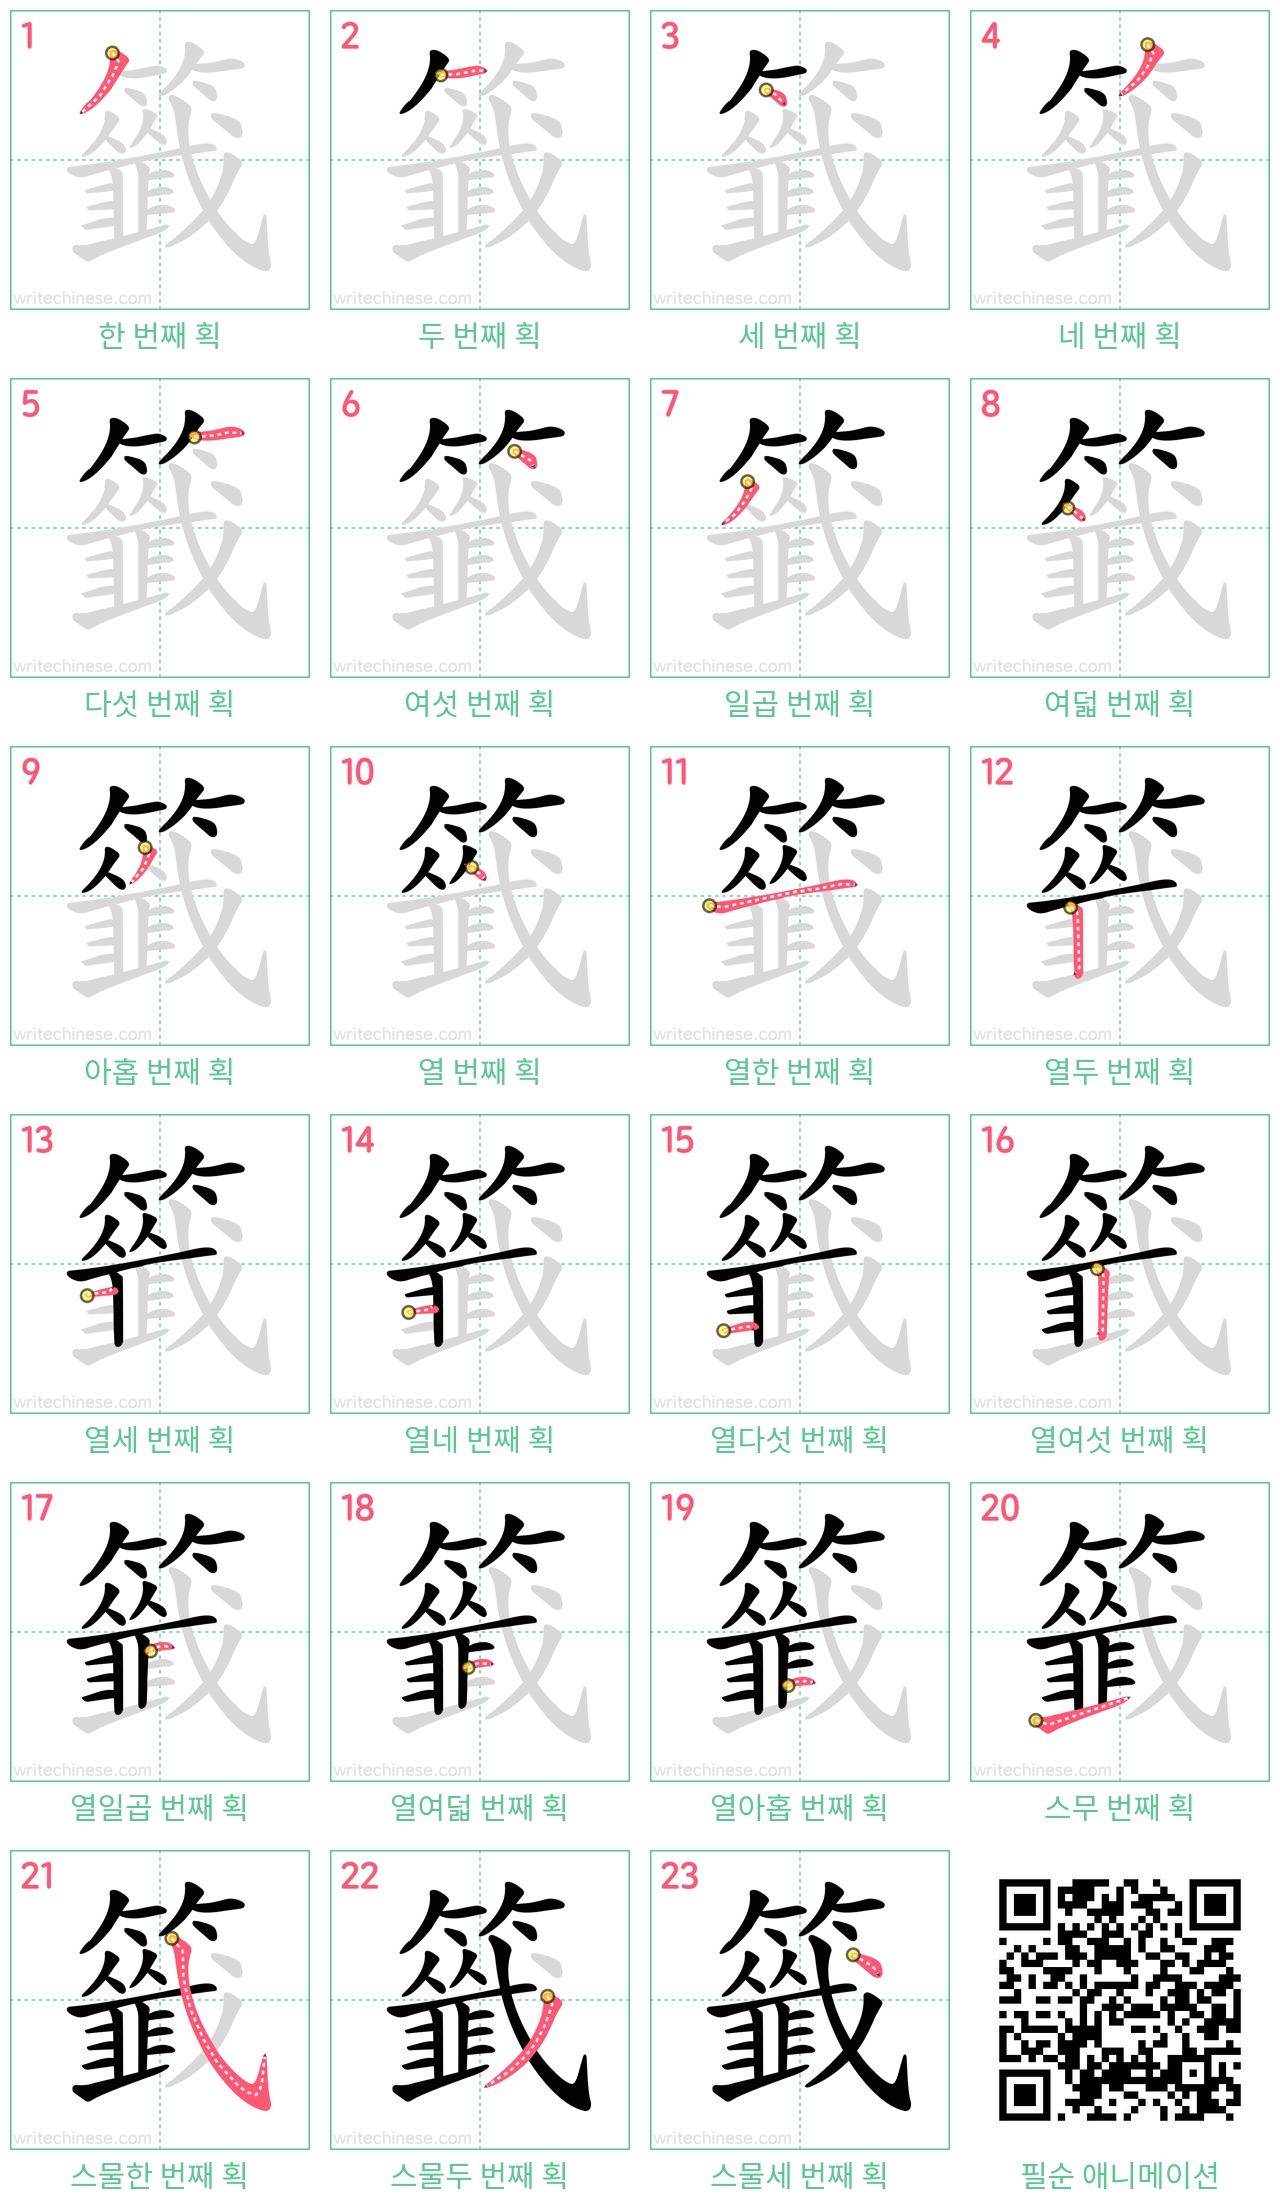 籤 step-by-step stroke order diagrams